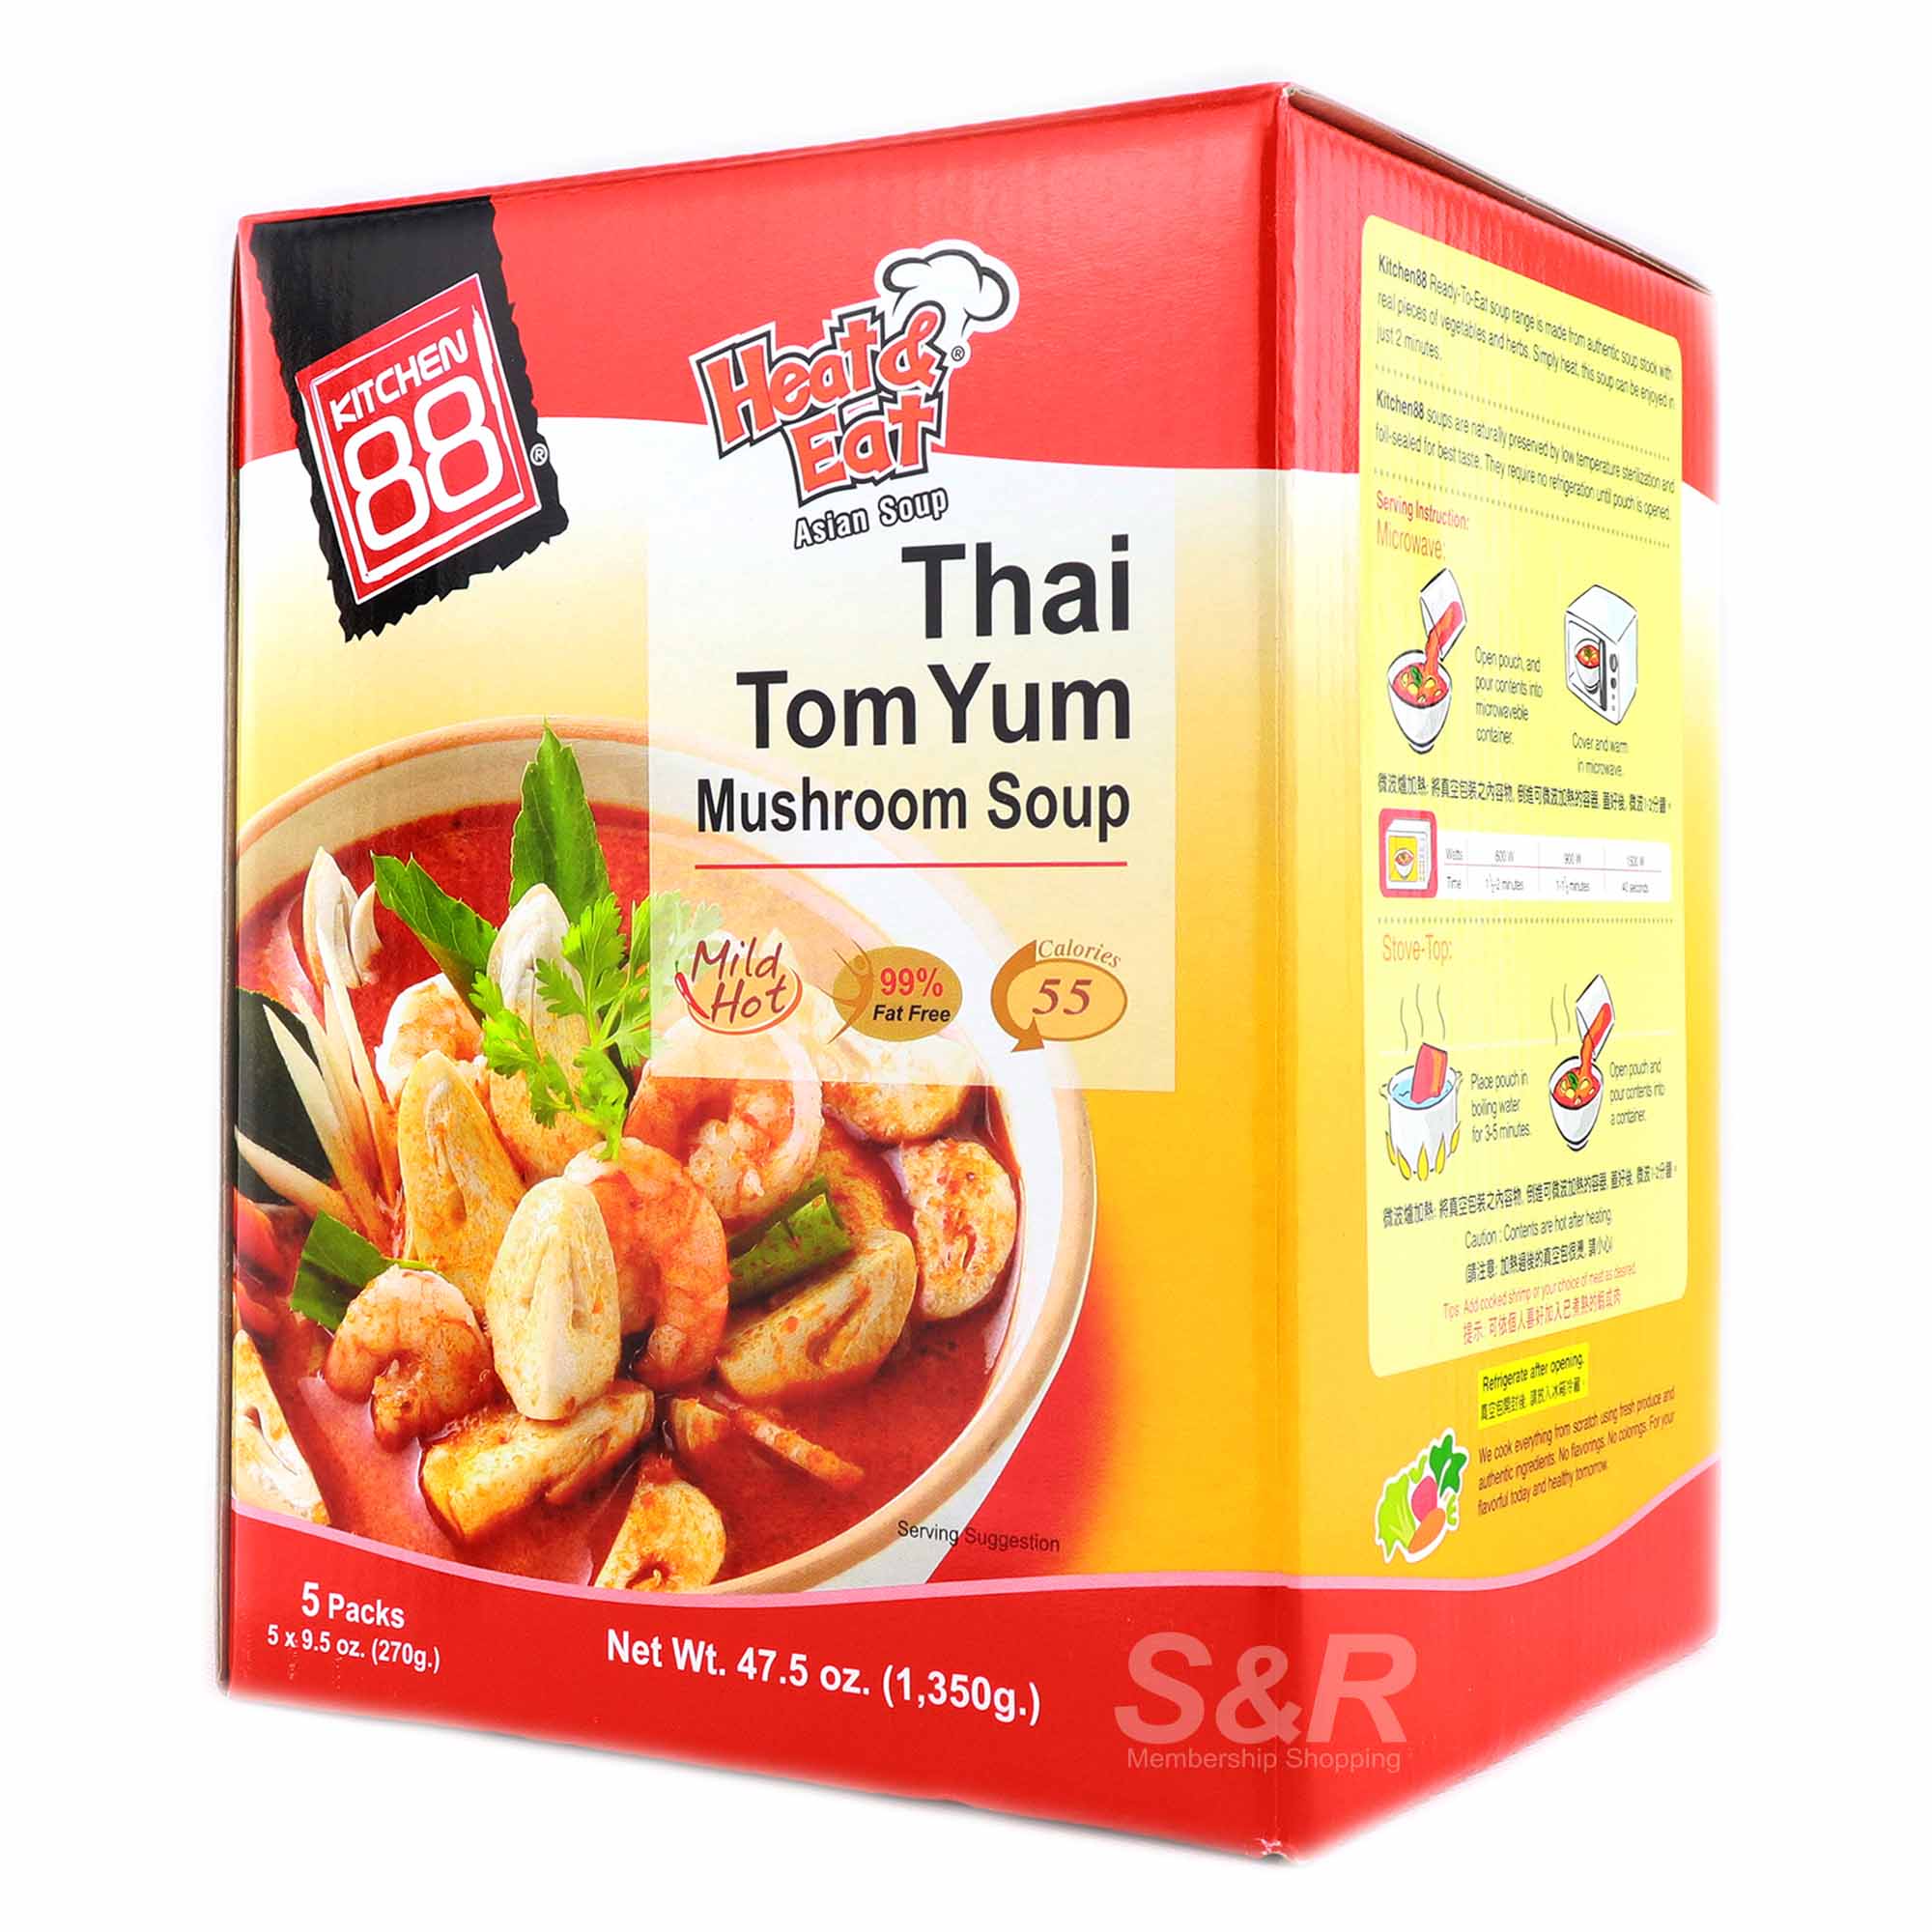 Thai Tom Yum